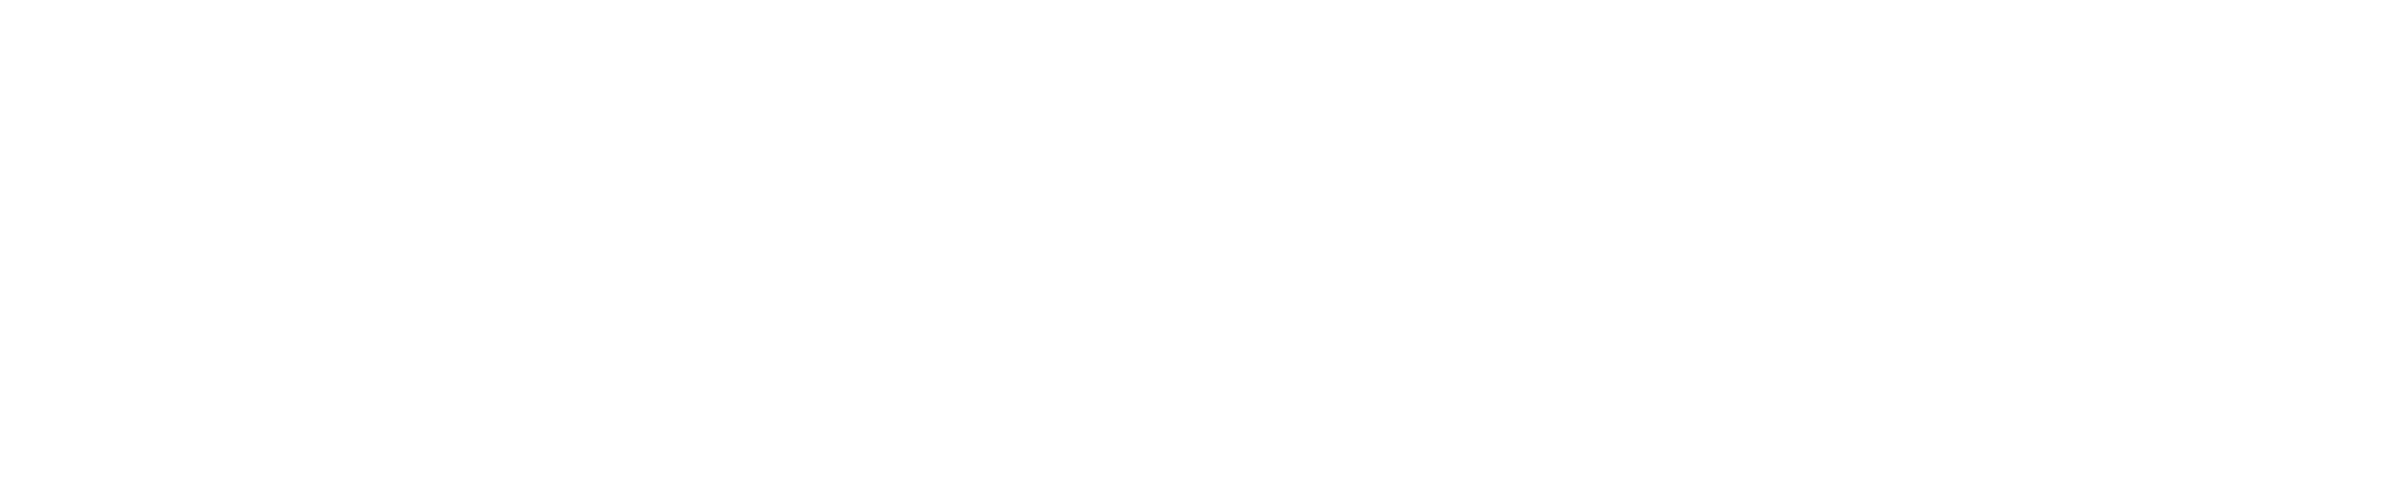 高崎市のキャバクラ「ANNEX」のロゴ